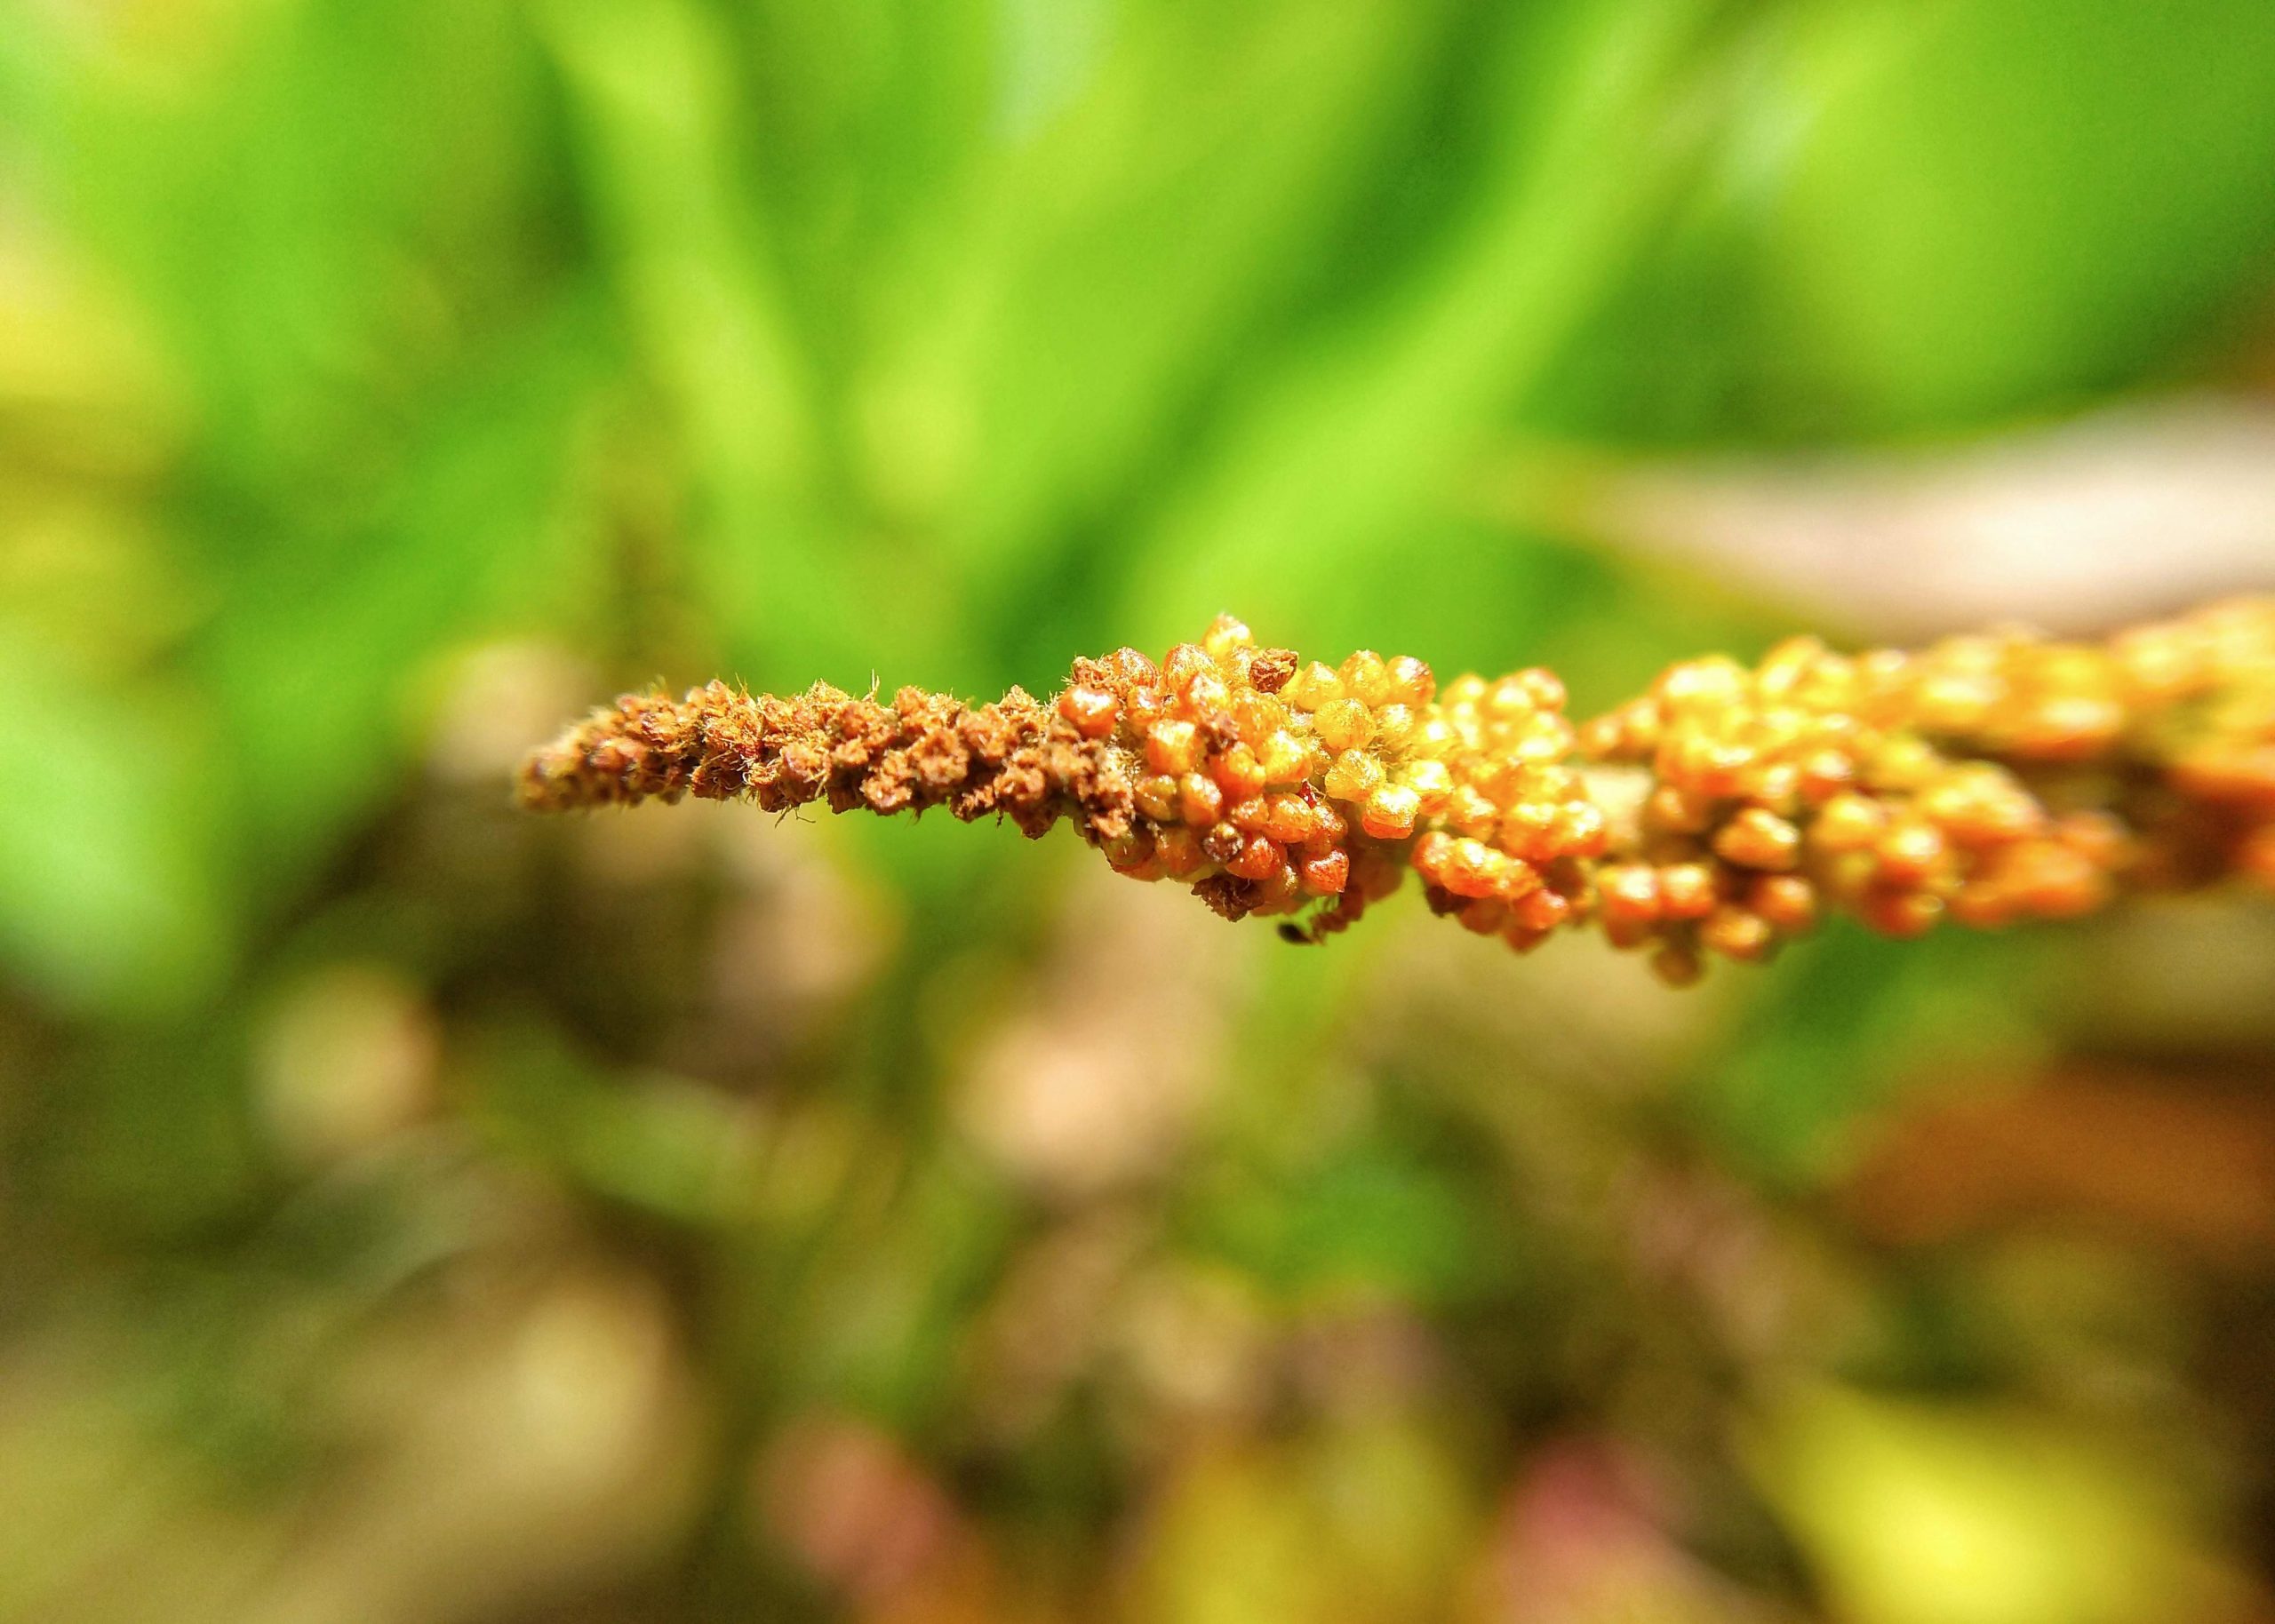 millet plant close up